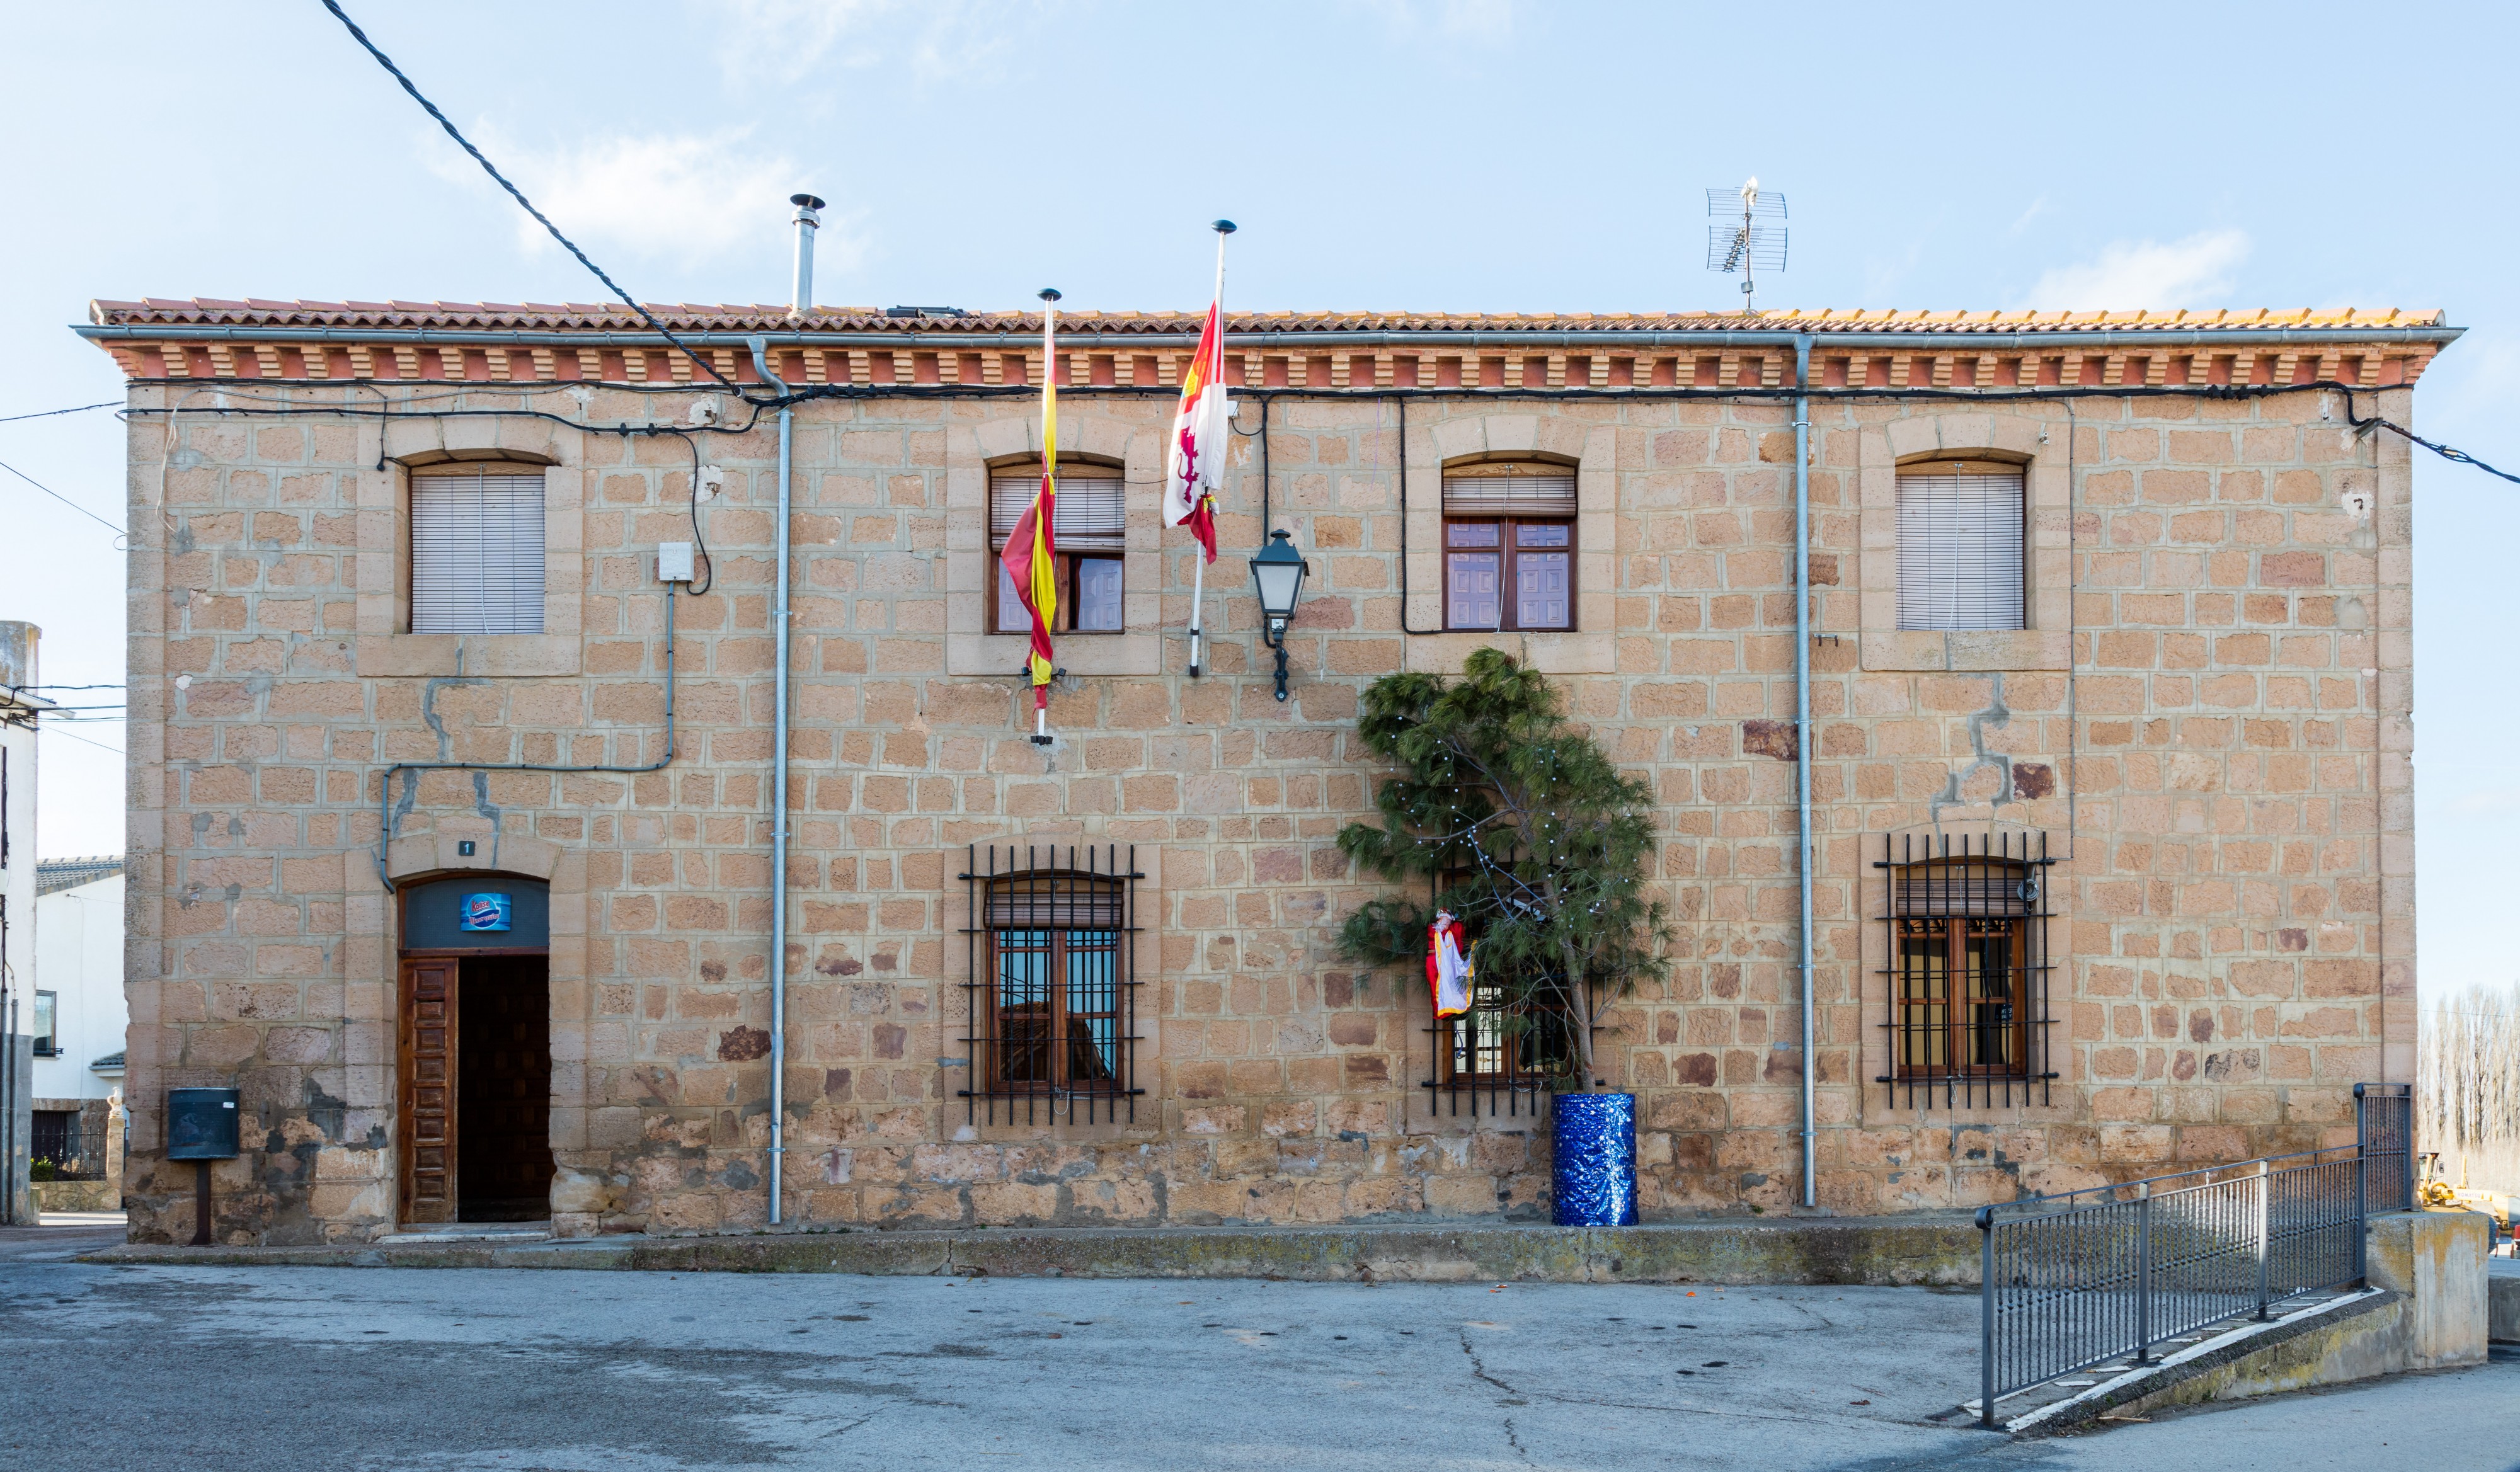 Ayuntamiento, Coscurita, Soria, España, 2015-12-29, DD 88